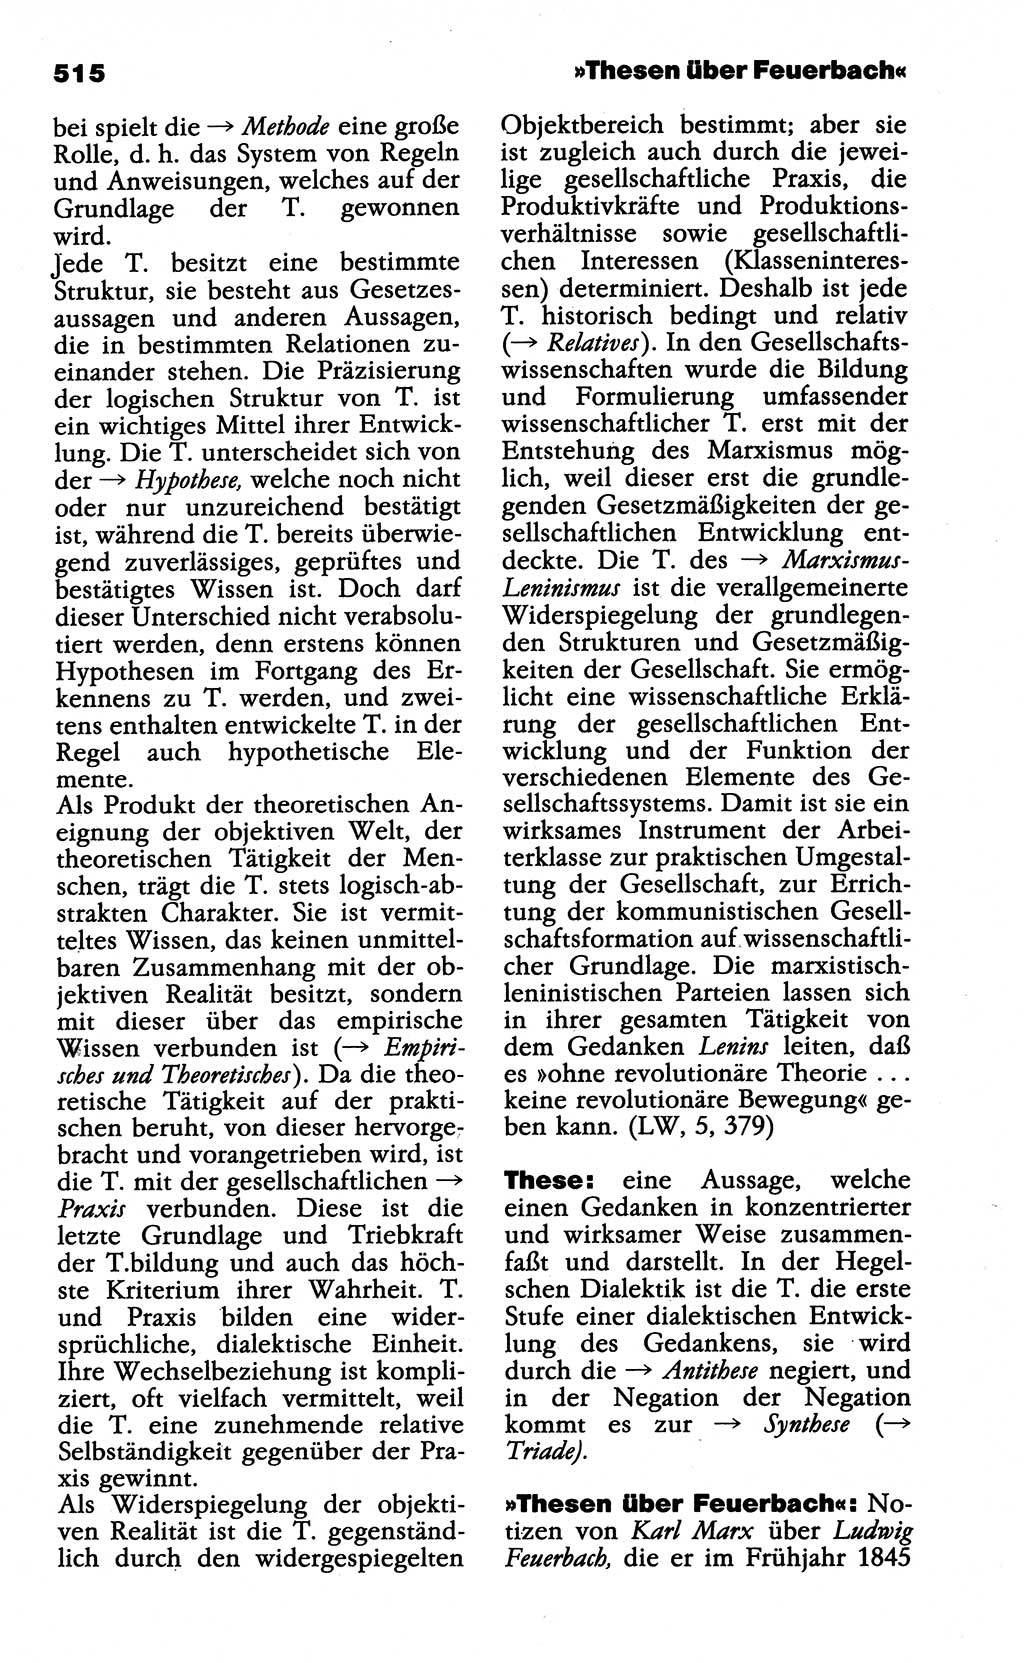 Wörterbuch der marxistisch-leninistischen Philosophie [Deutsche Demokratische Republik (DDR)] 1985, Seite 515 (Wb. ML Phil. DDR 1985, S. 515)